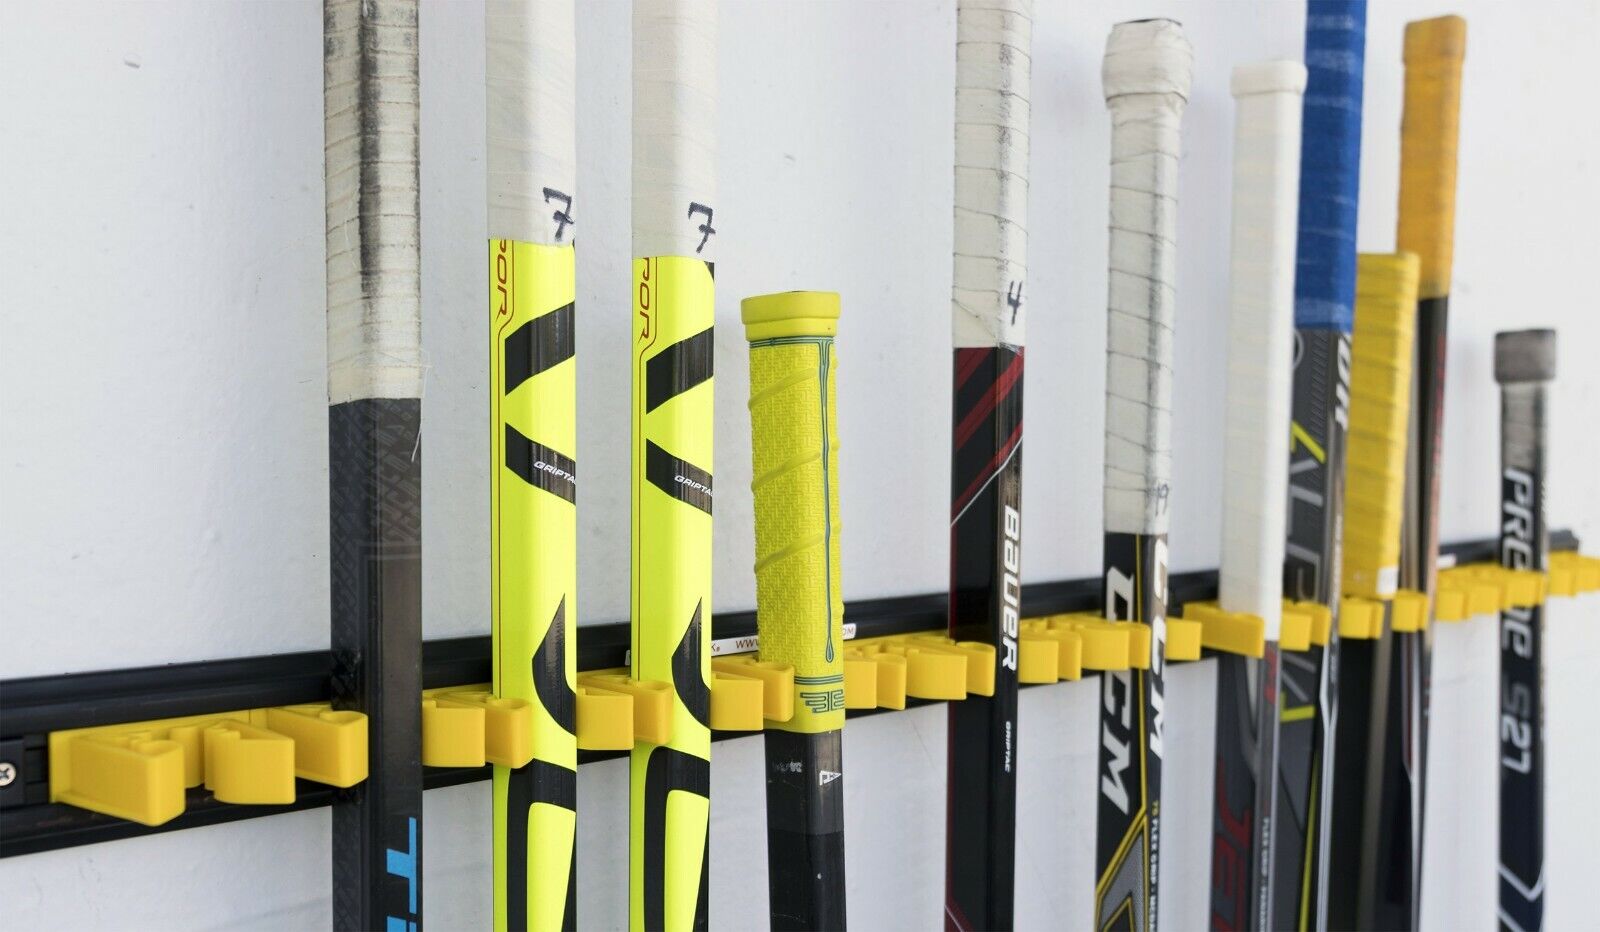 Stick Check Hockey Stick Rack! Holds 18 Sticks, Made In Canada Sticks Arena Home